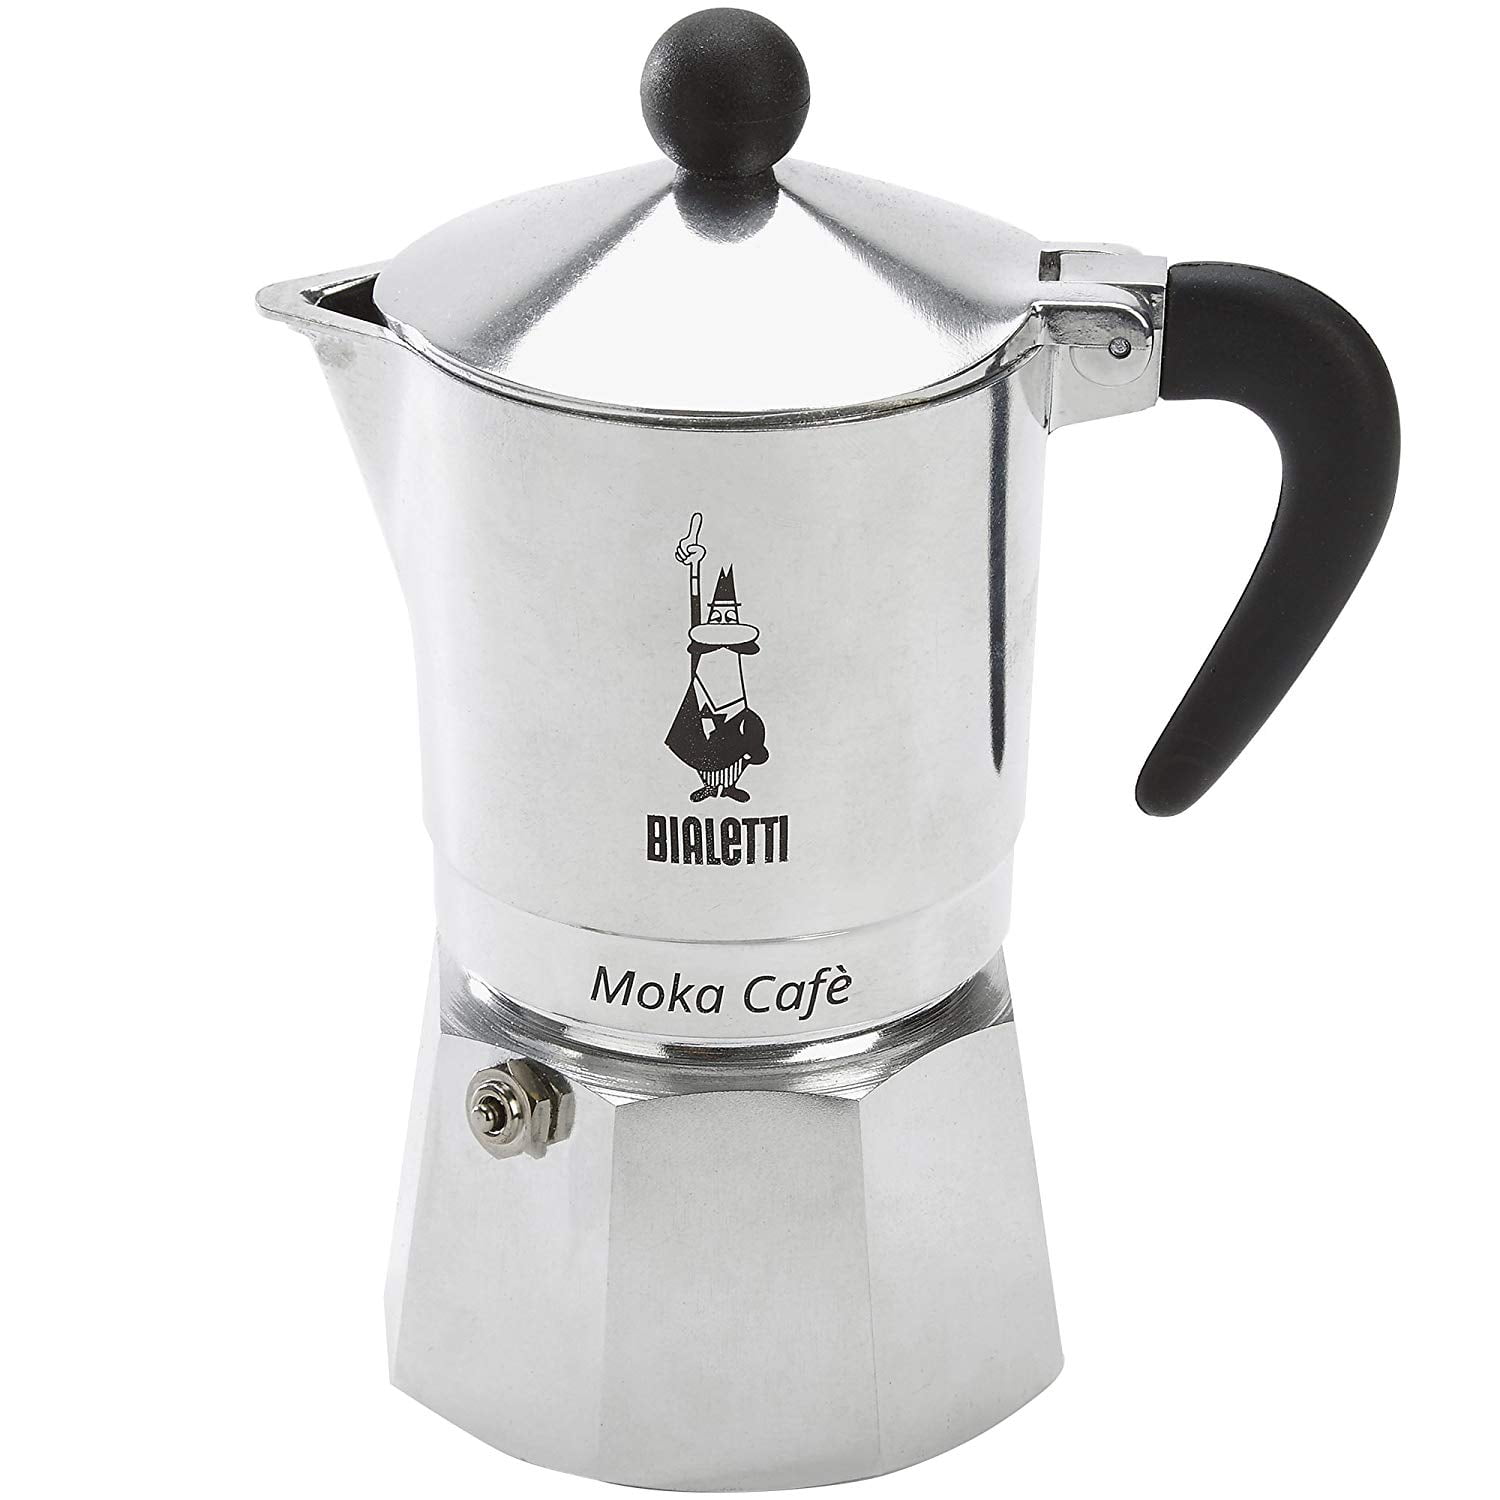 Bialetti, Moka Café, 3 Cup Stove Top Espresso Coffee Maker, Silver